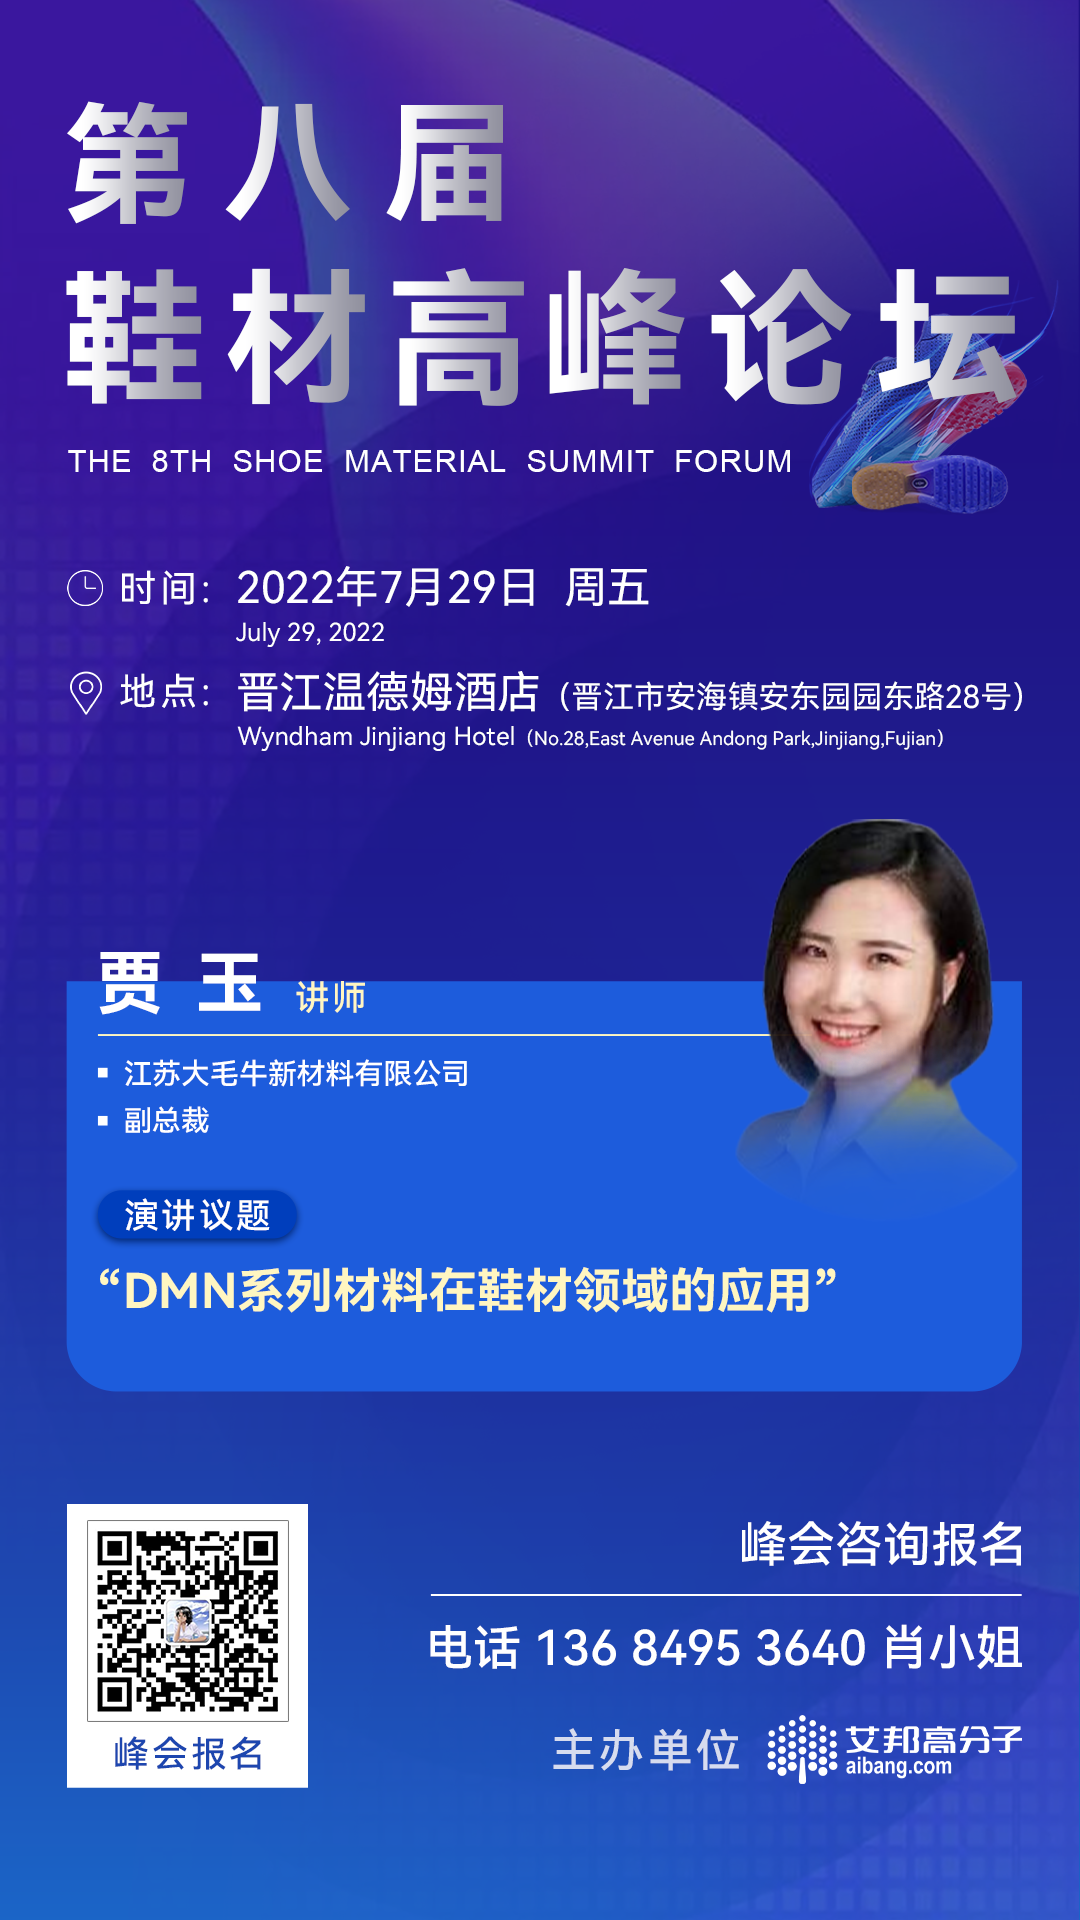 江苏大毛牛将出席第八届鞋材高峰论坛并做主题演讲